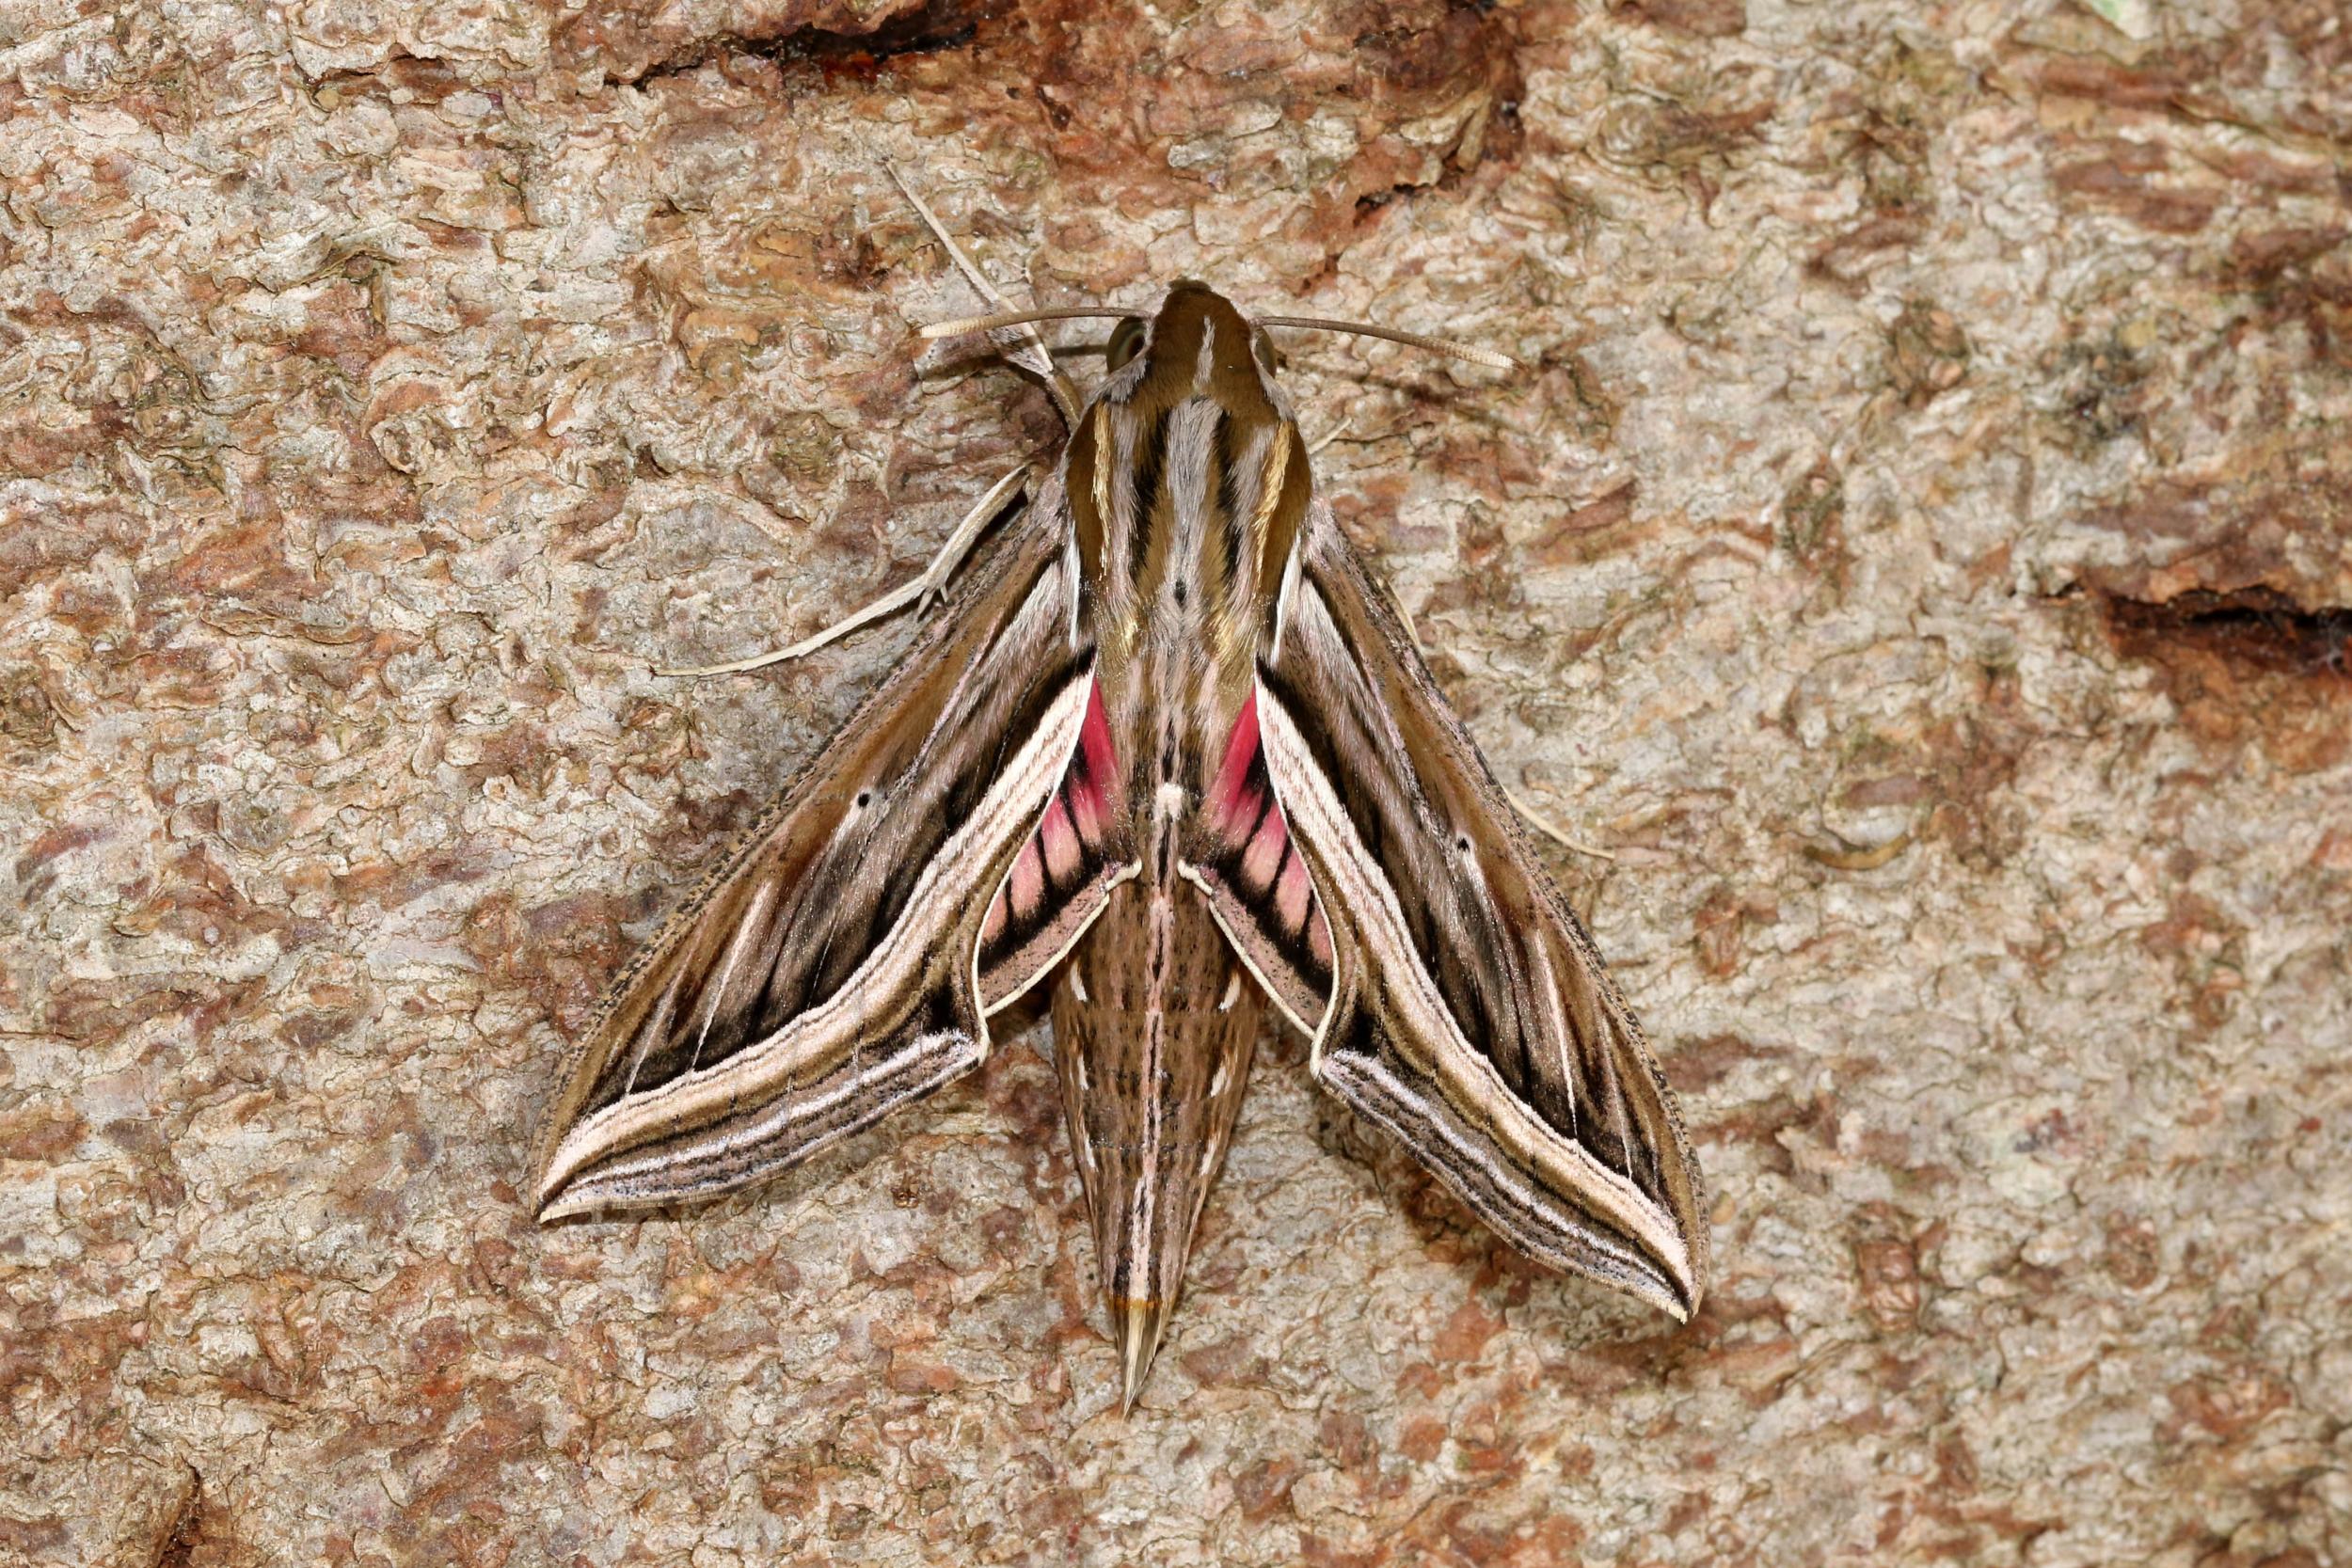 A silver-striped hawk-moth